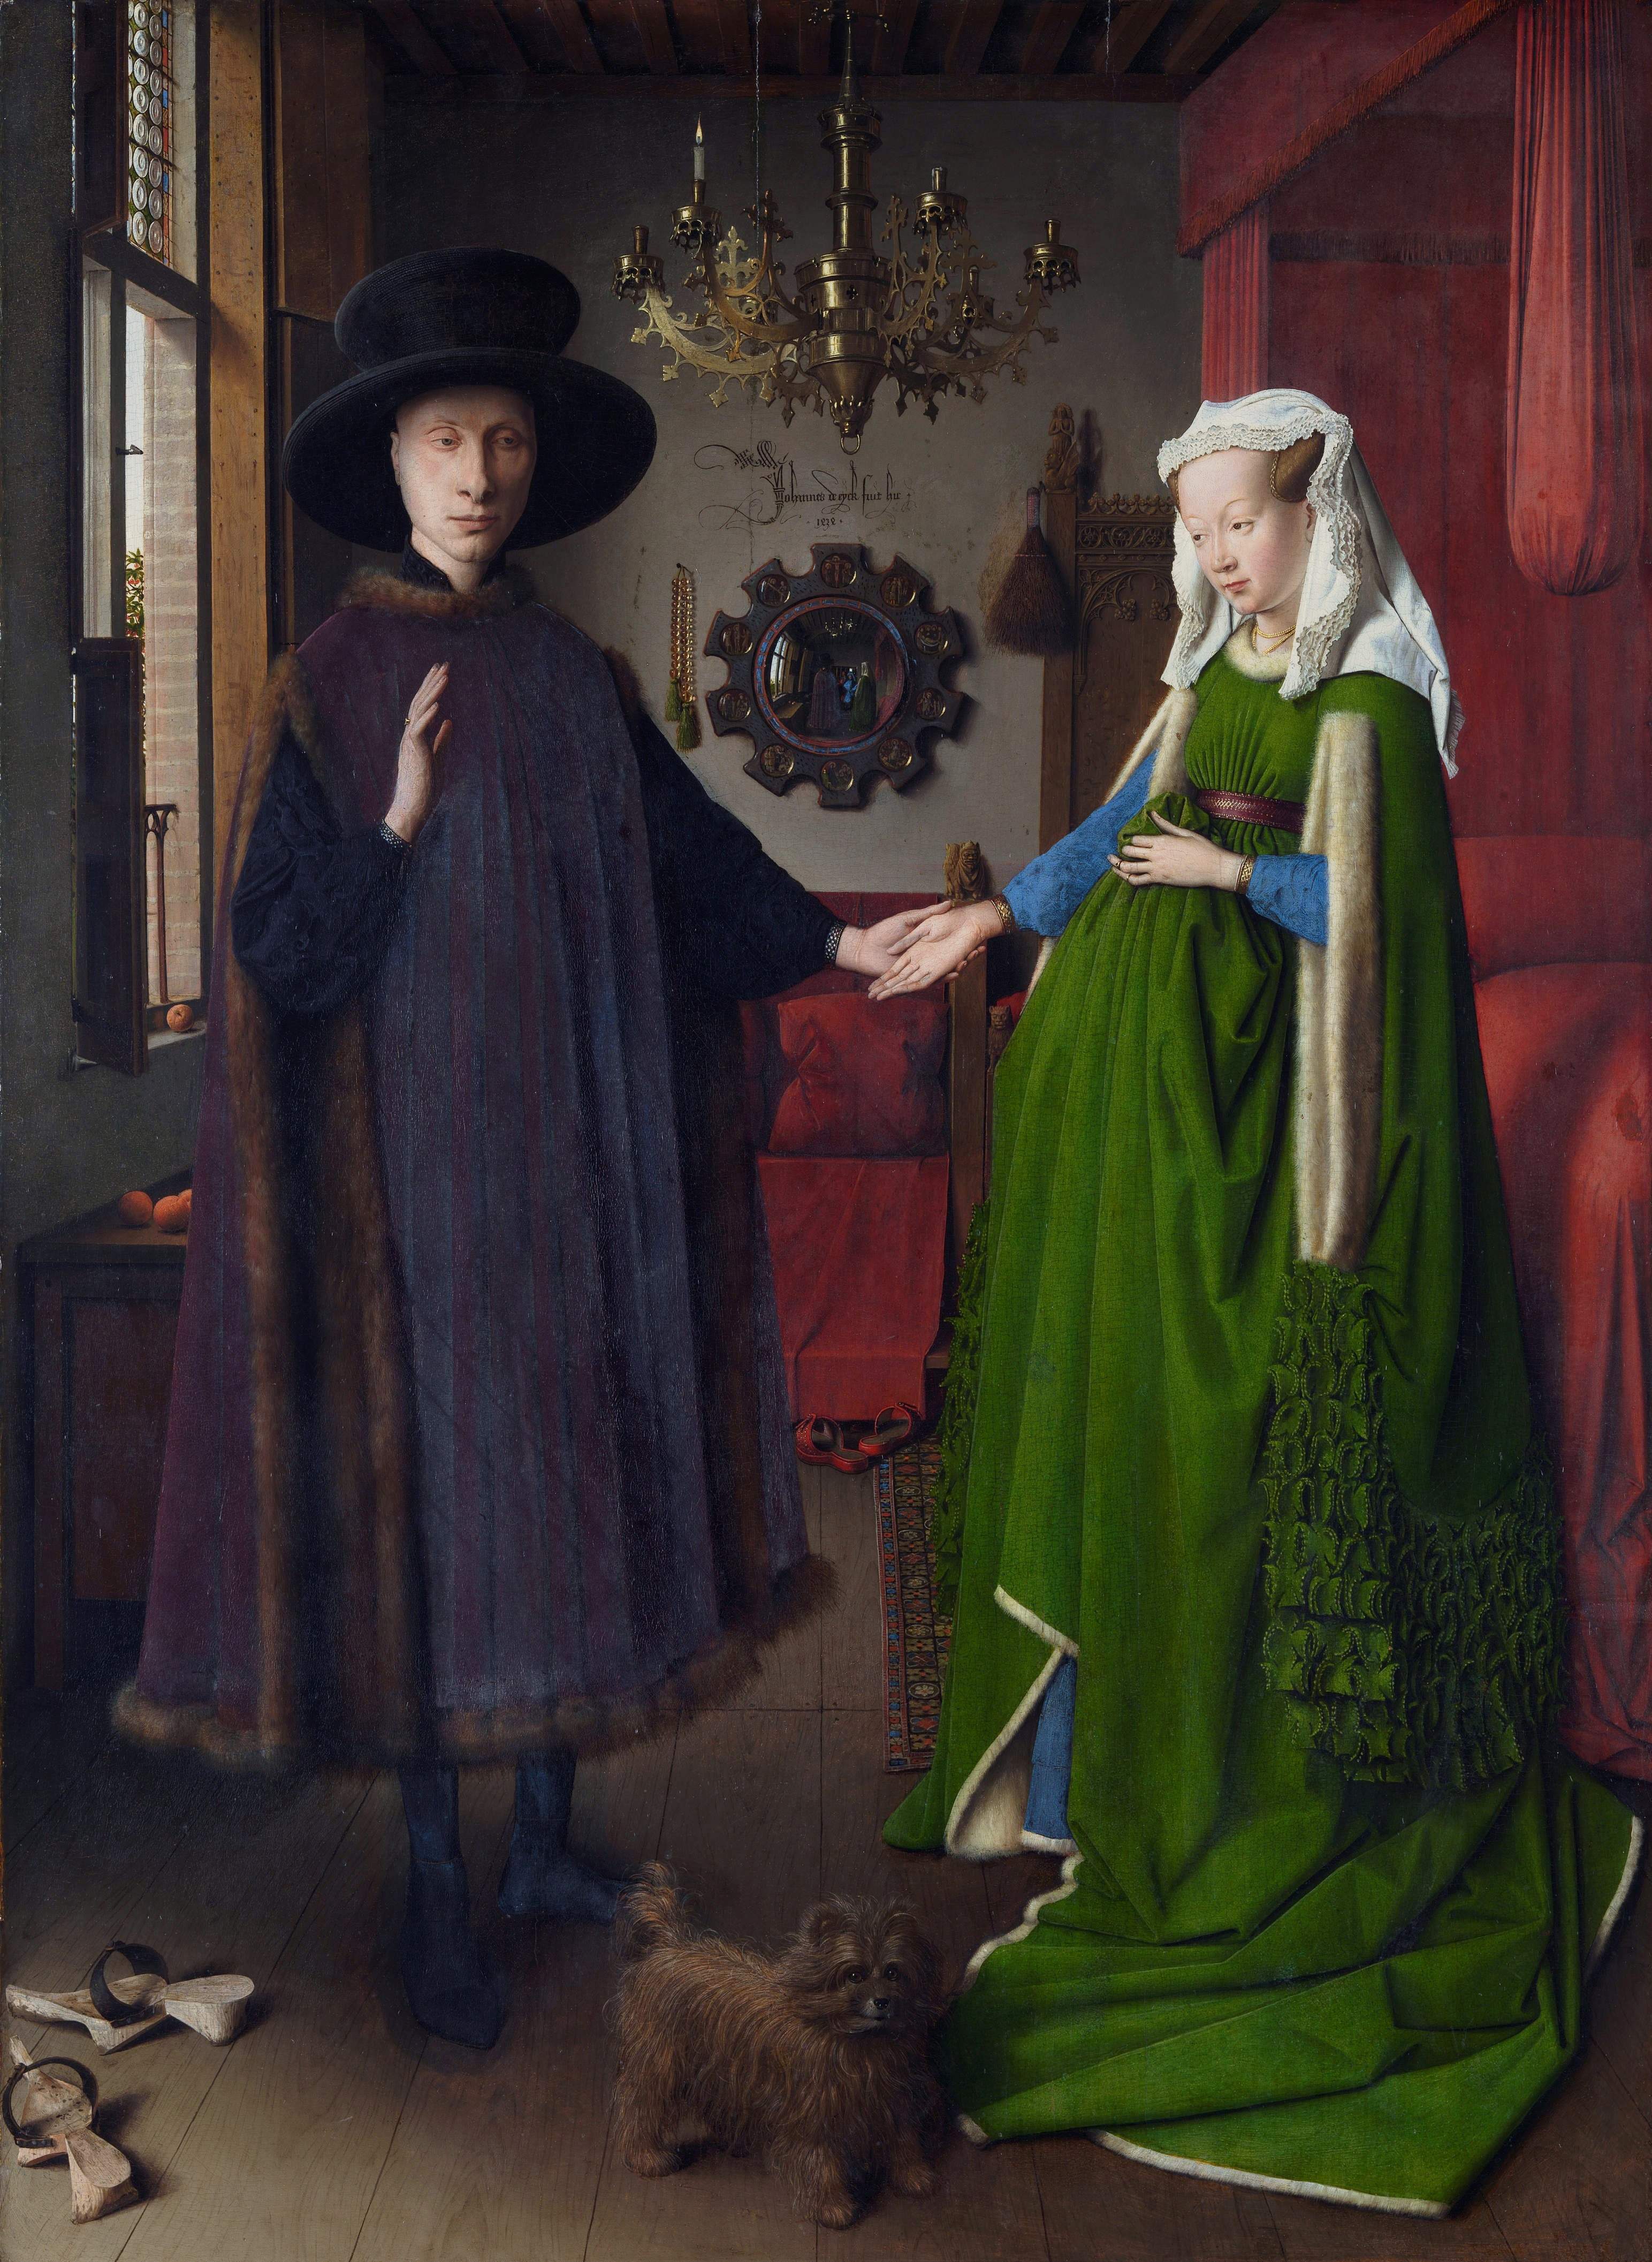 De houppelandes van het echtpaar Arnolfini, uniseks-kleding uit de middeleeuwen.